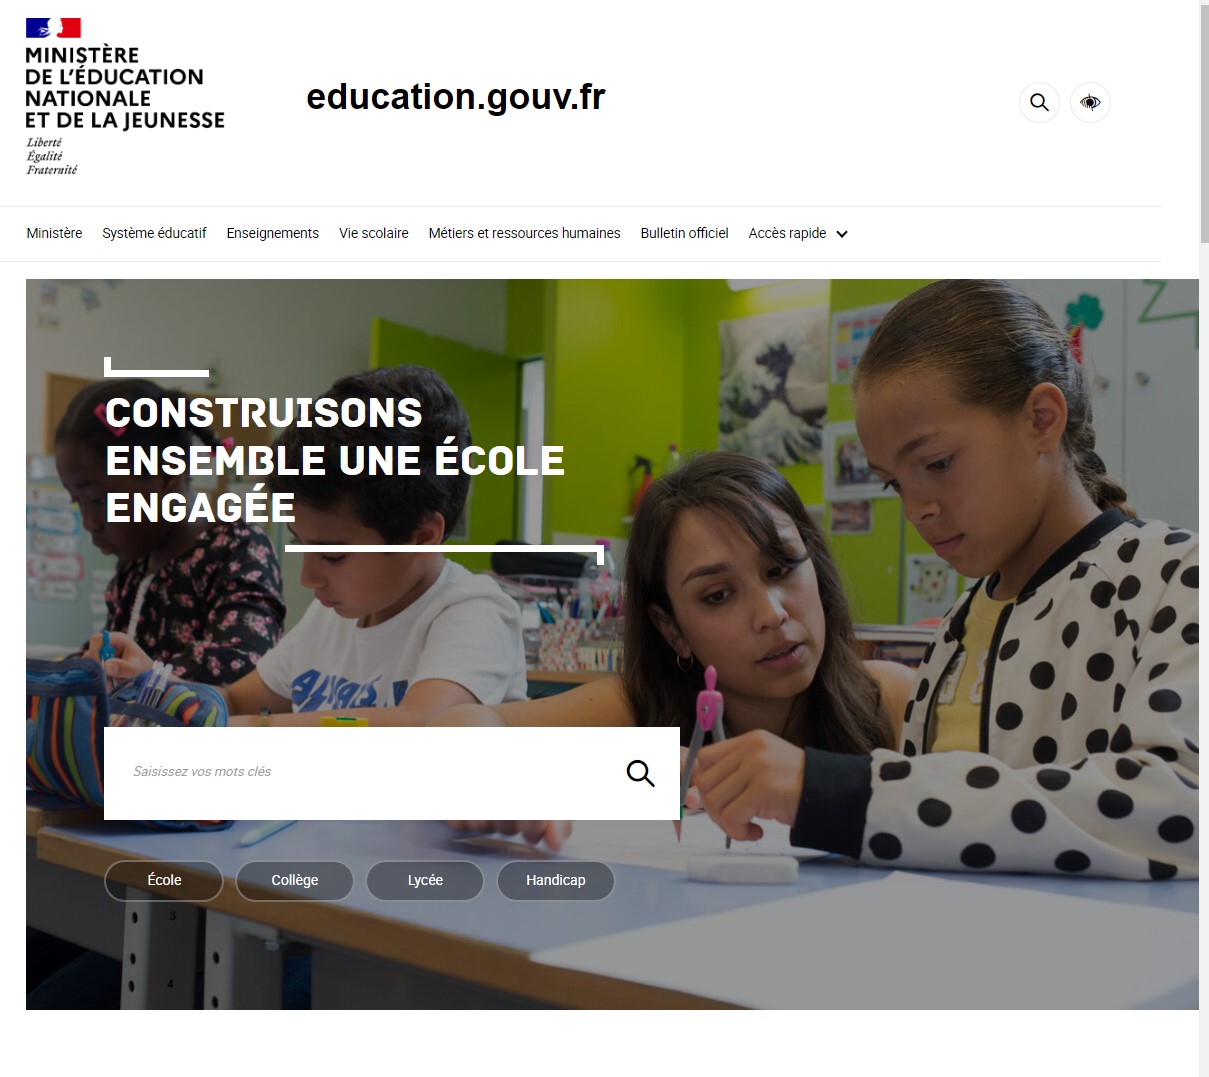 Site education.gouv.fr le 01 janvier 2023 selon le site Weybackmachine